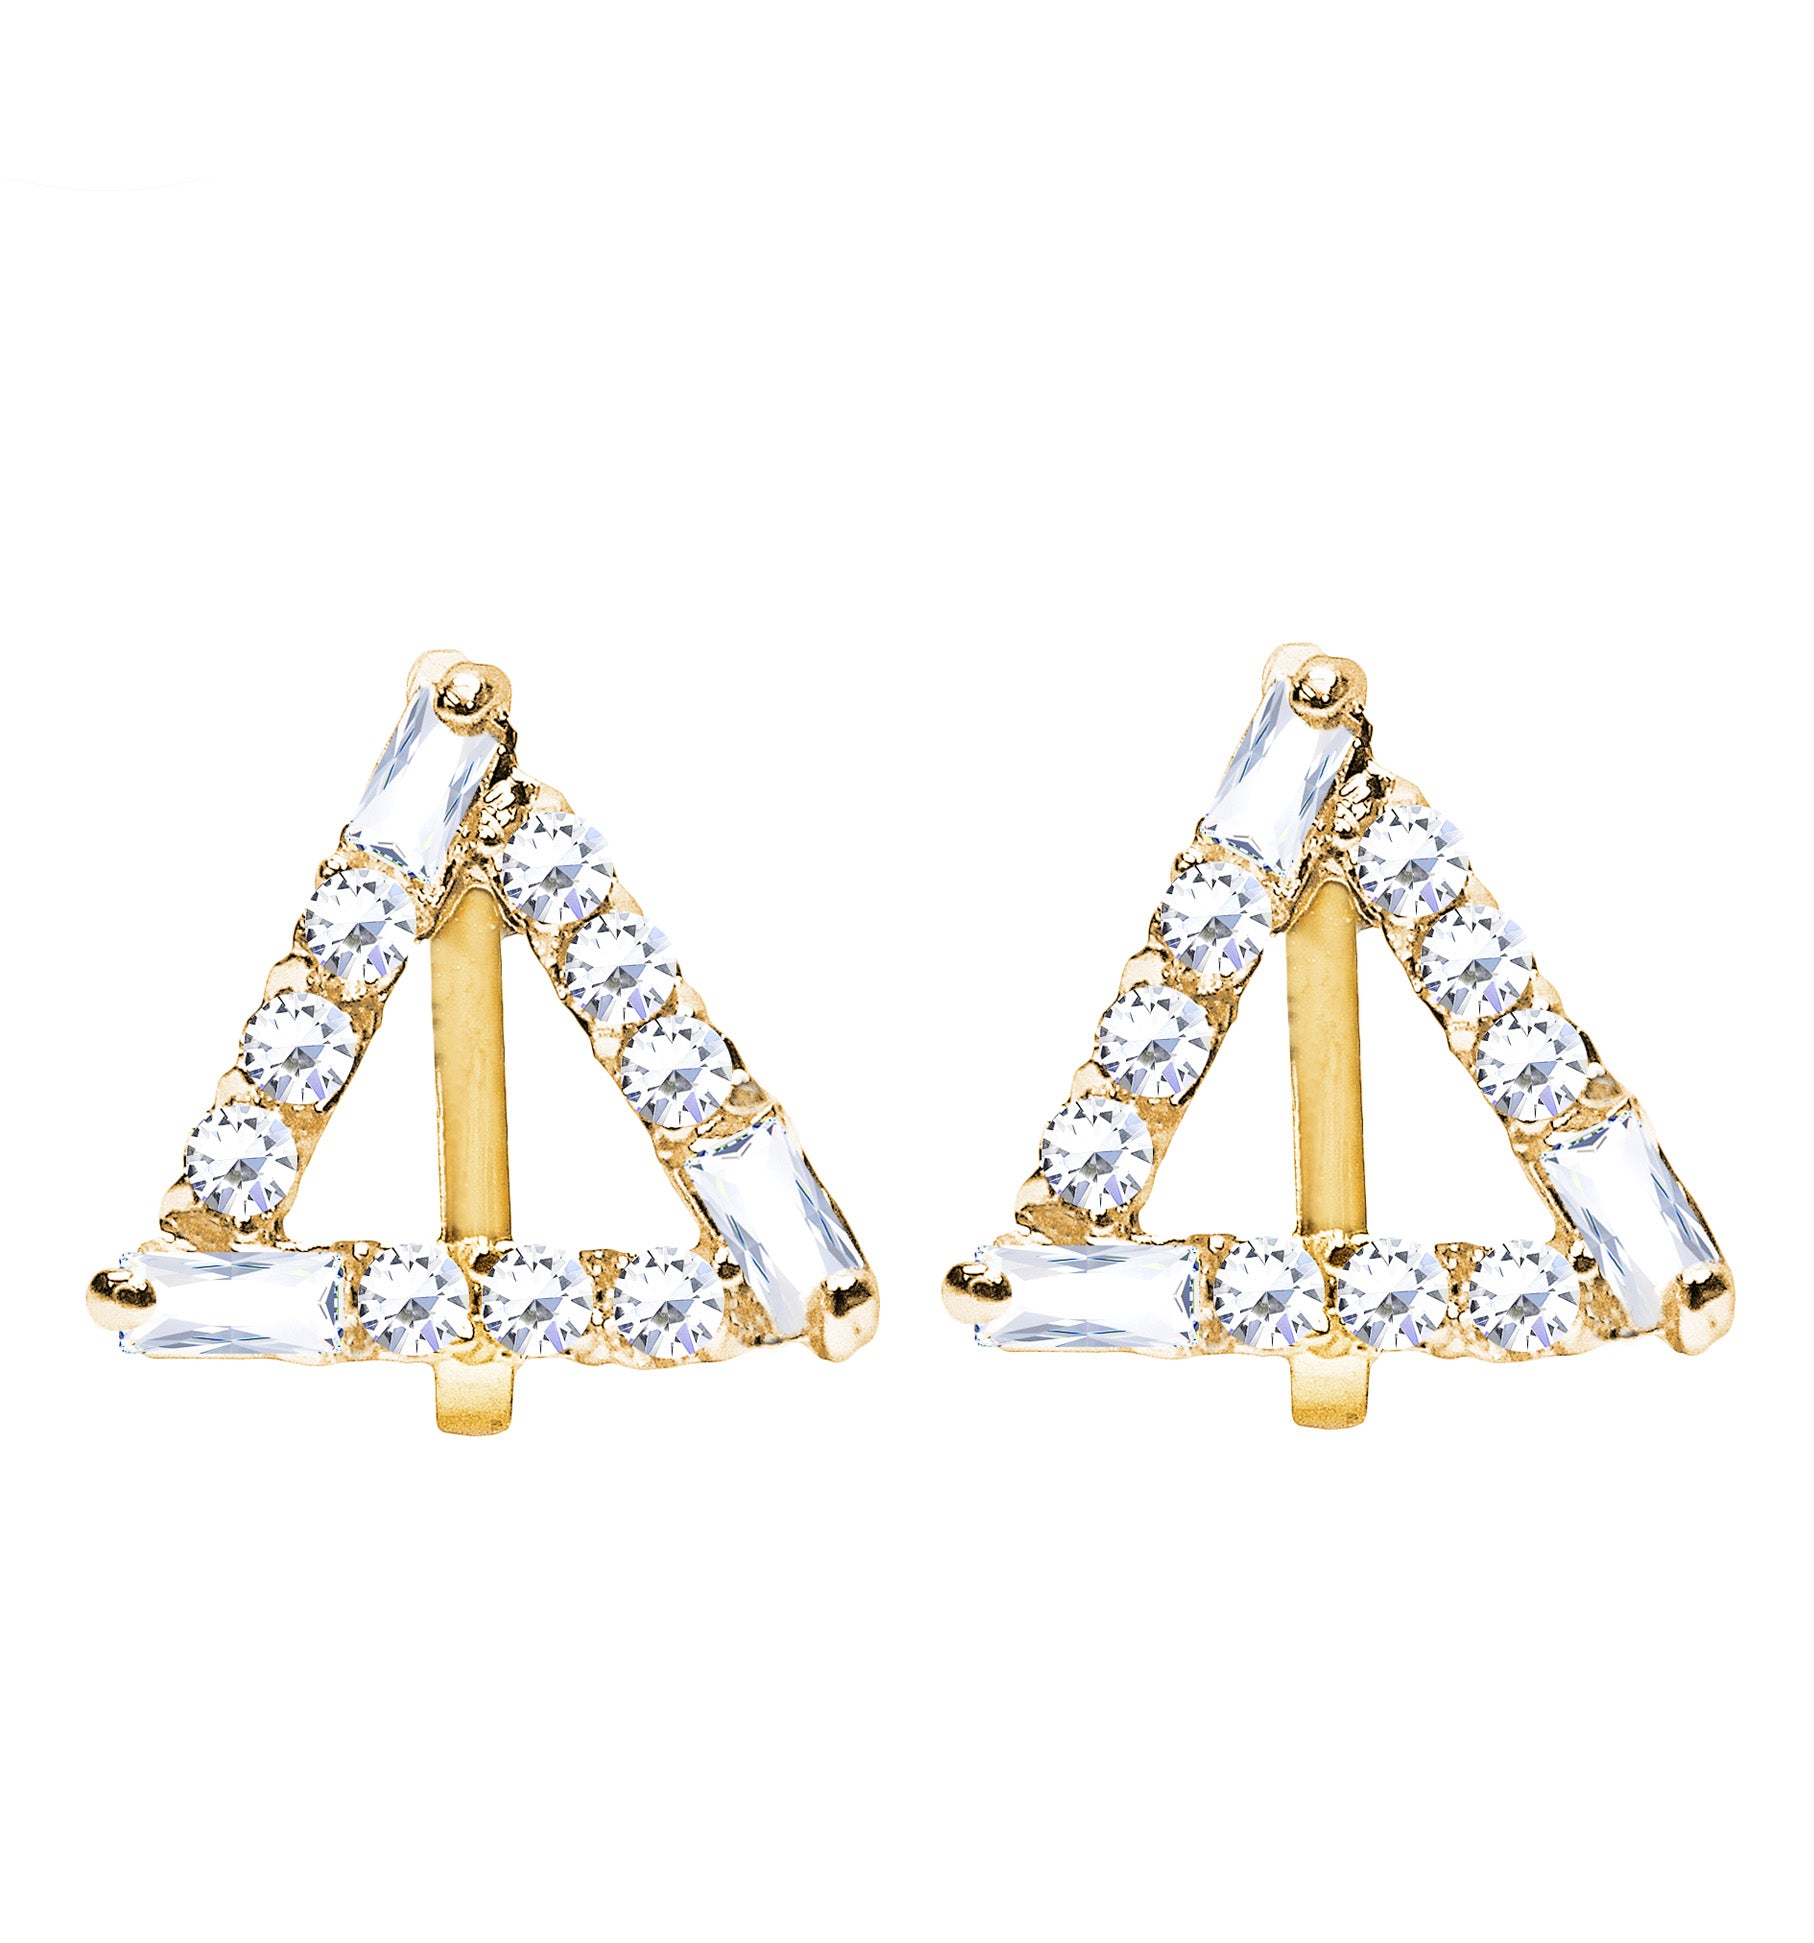 CLIP ON Earrings Women's Crystal Gold Geometric Triangle Earrings Jewelry Ladies Girls